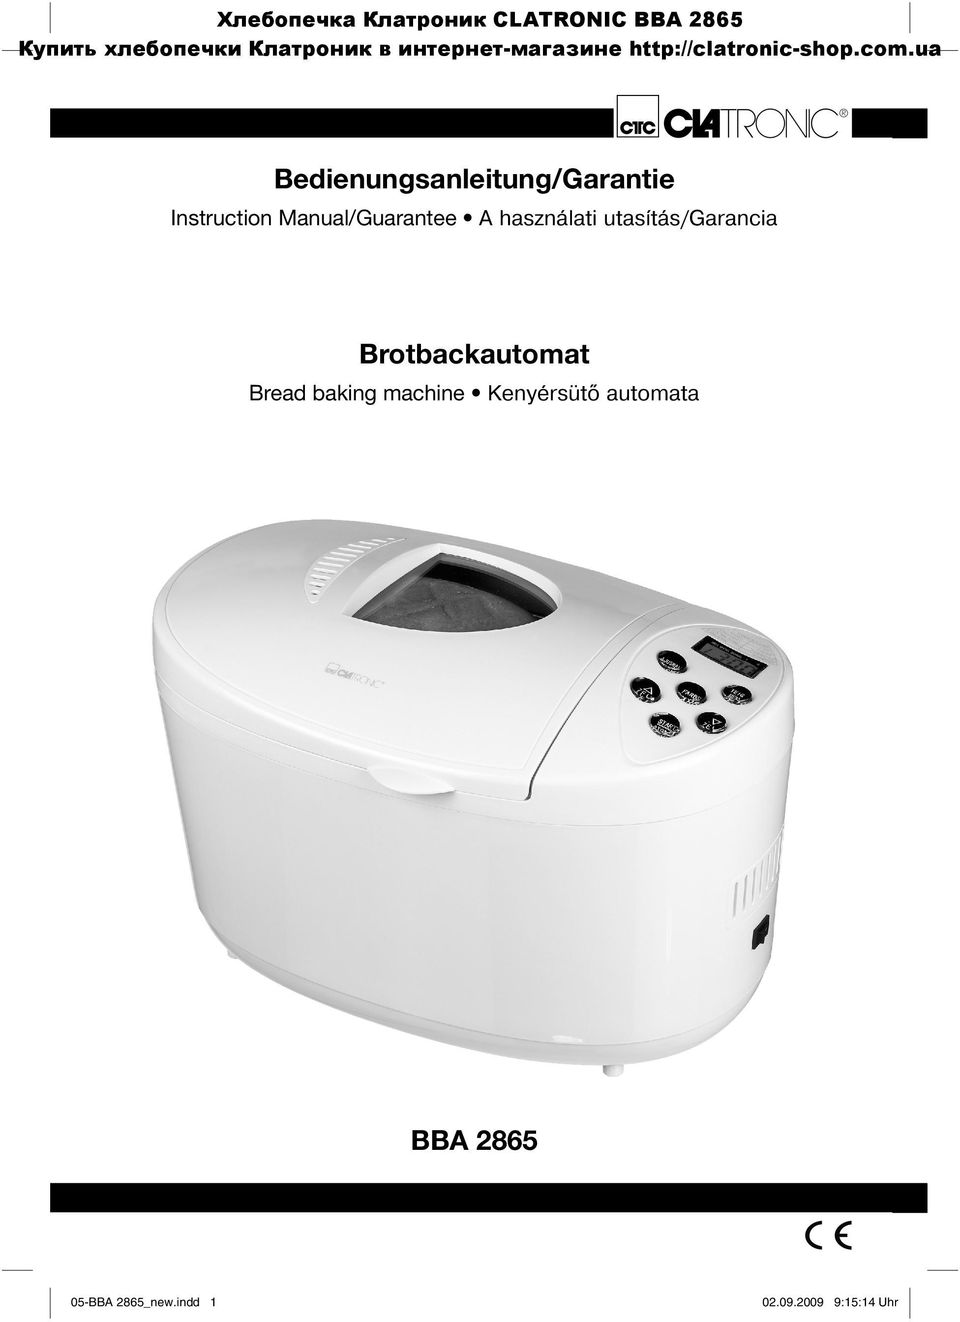 használati utasítás/garancia Brotbackautomat Bread baking